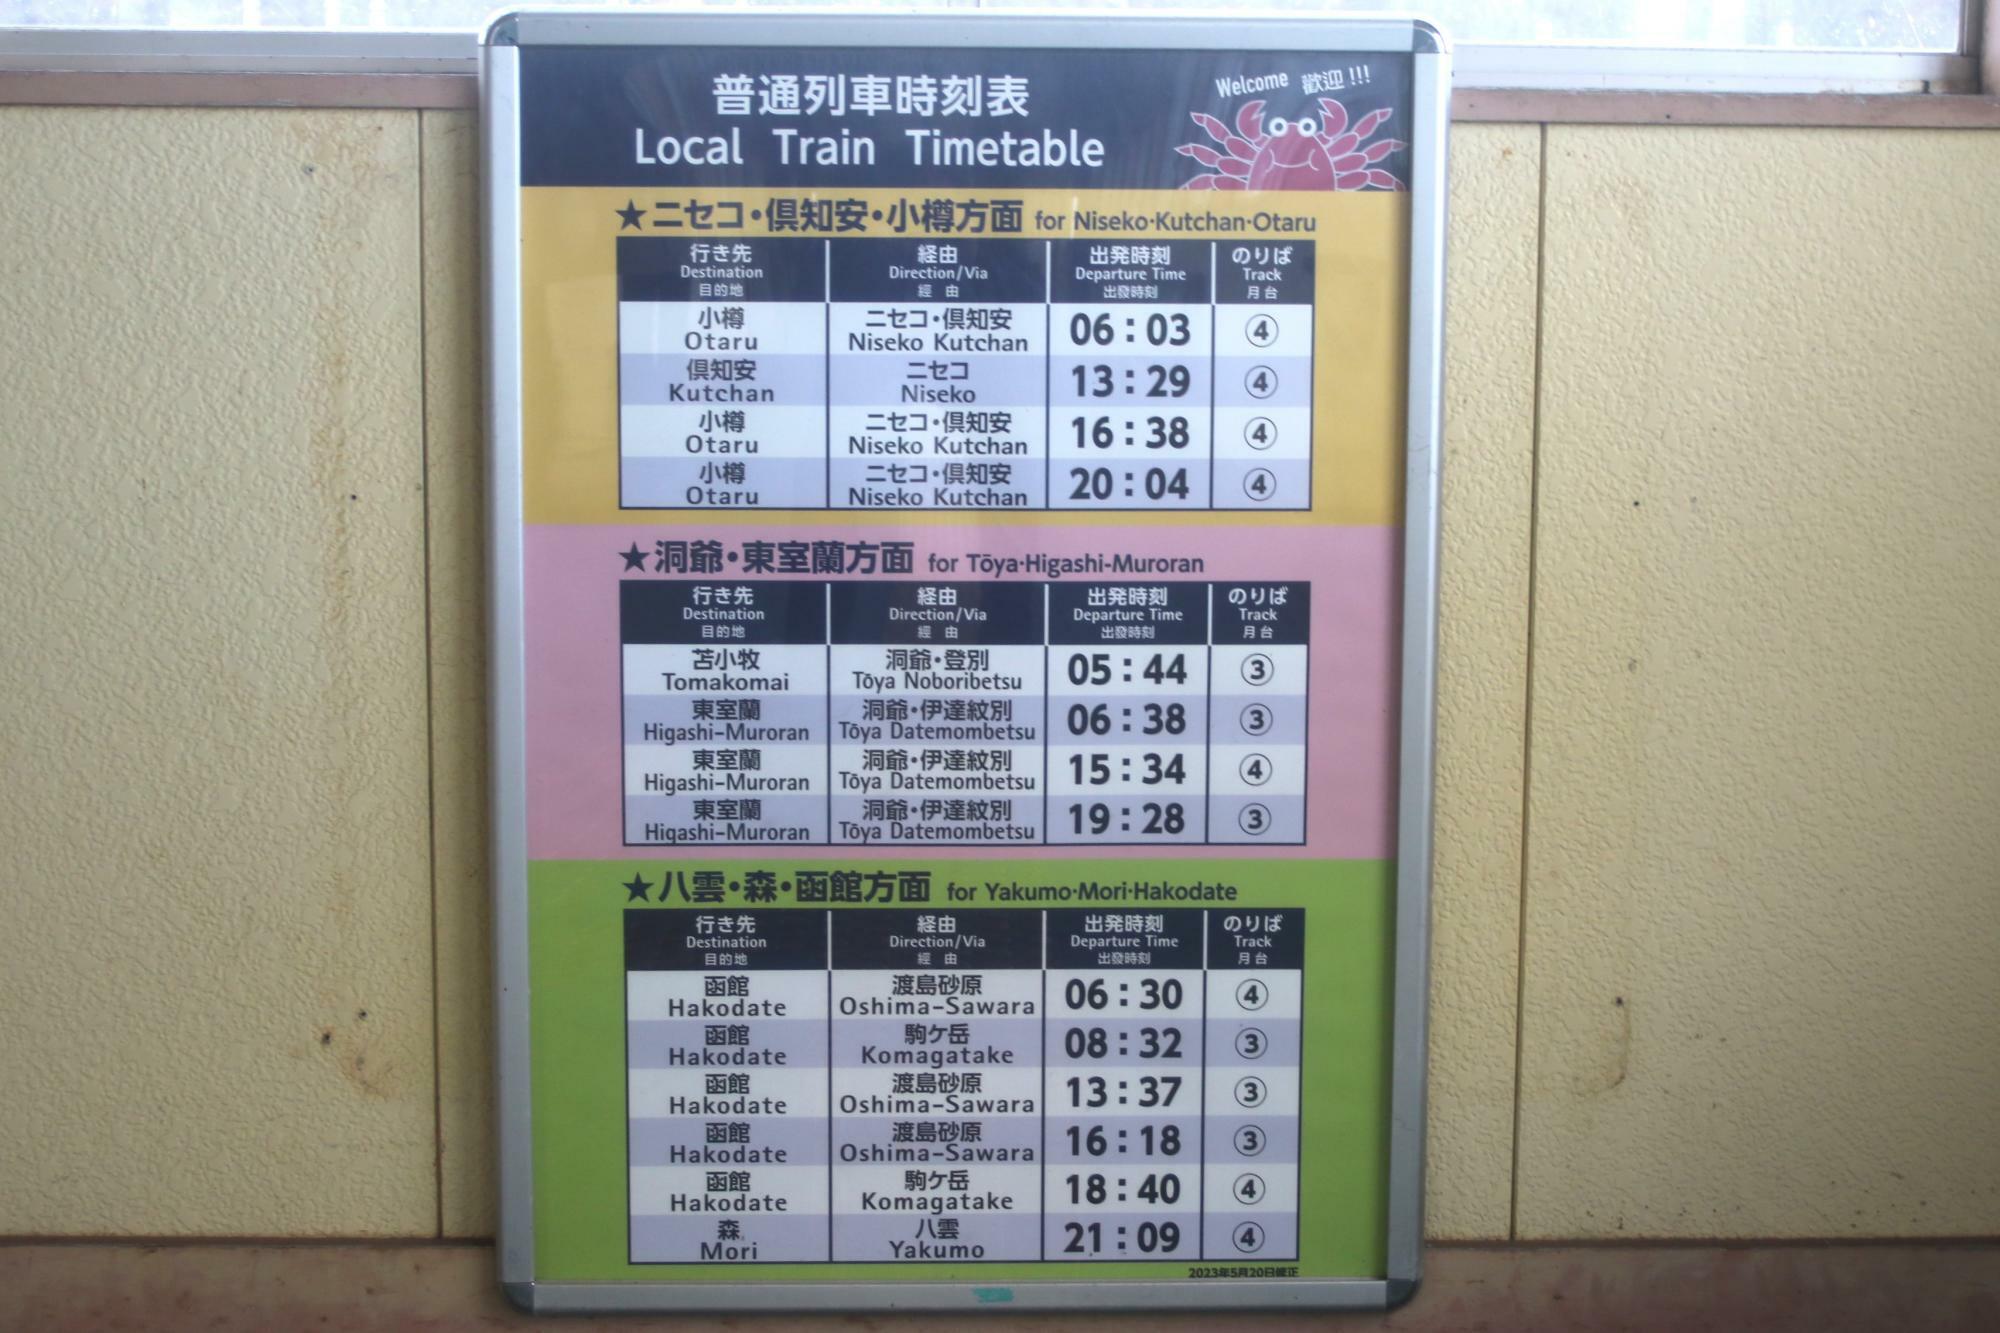 長万部駅ー豊浦駅の普通列車は1日4往復のみ